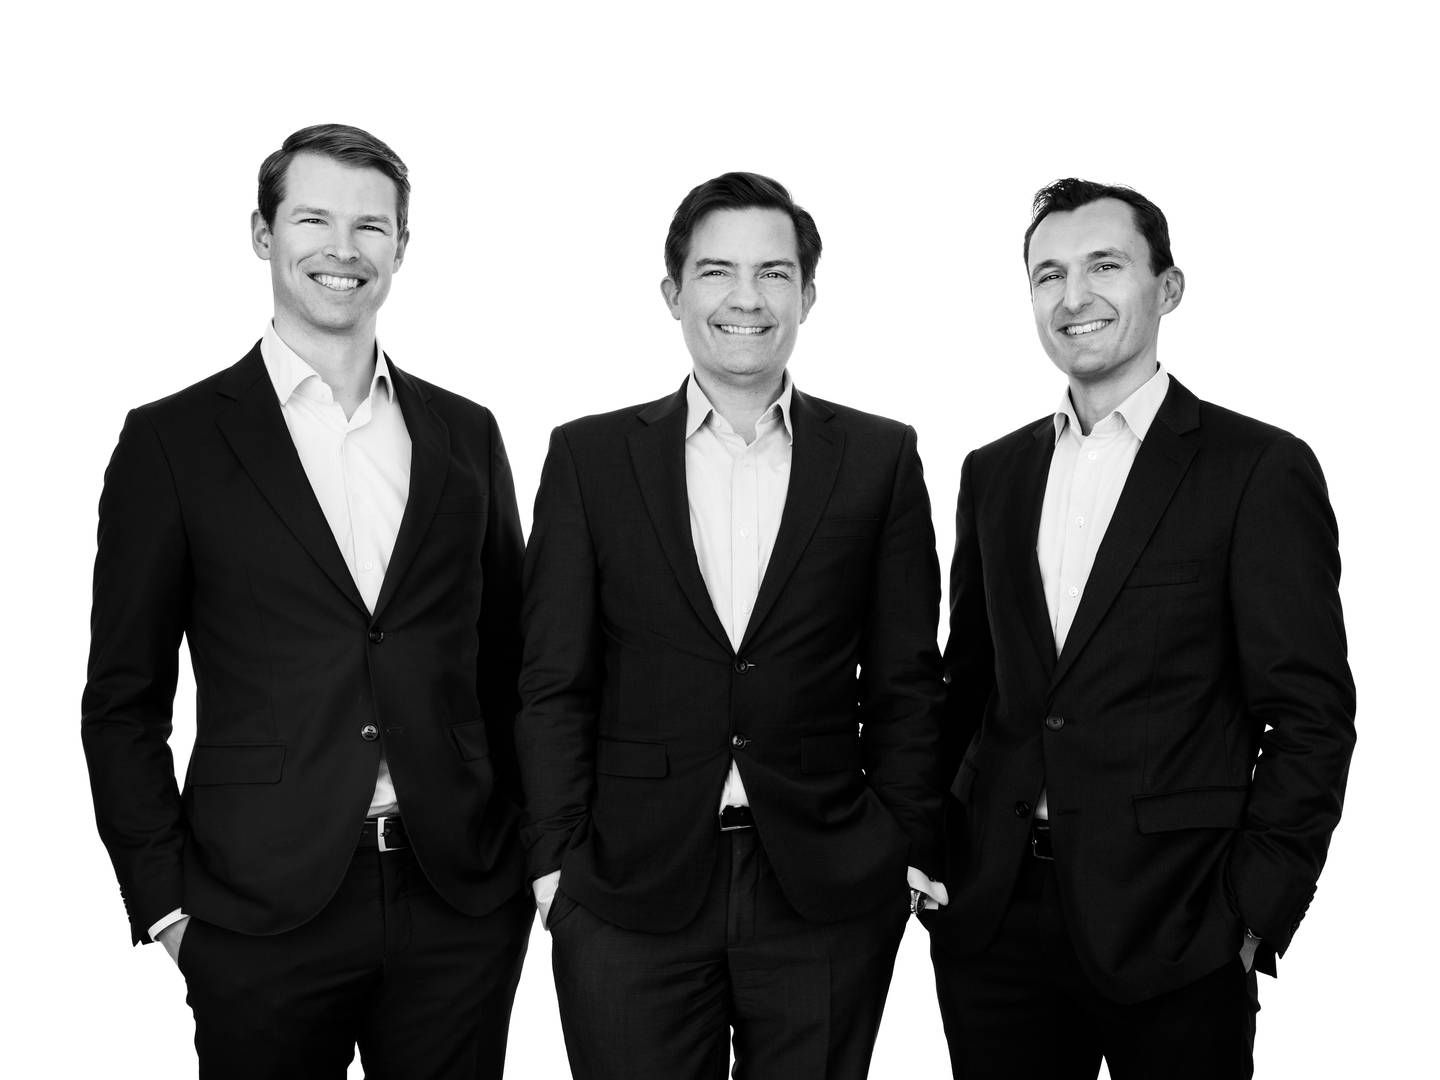 Jera Capital-trioen, bestående af Alexander Reventlow, Christen Estrup og Julien Marencic, forlod deres skriveborde hos Nordea Asset Management i efteråret 2021 for at blive selvstændige. | Foto: Pr / Jera Capital